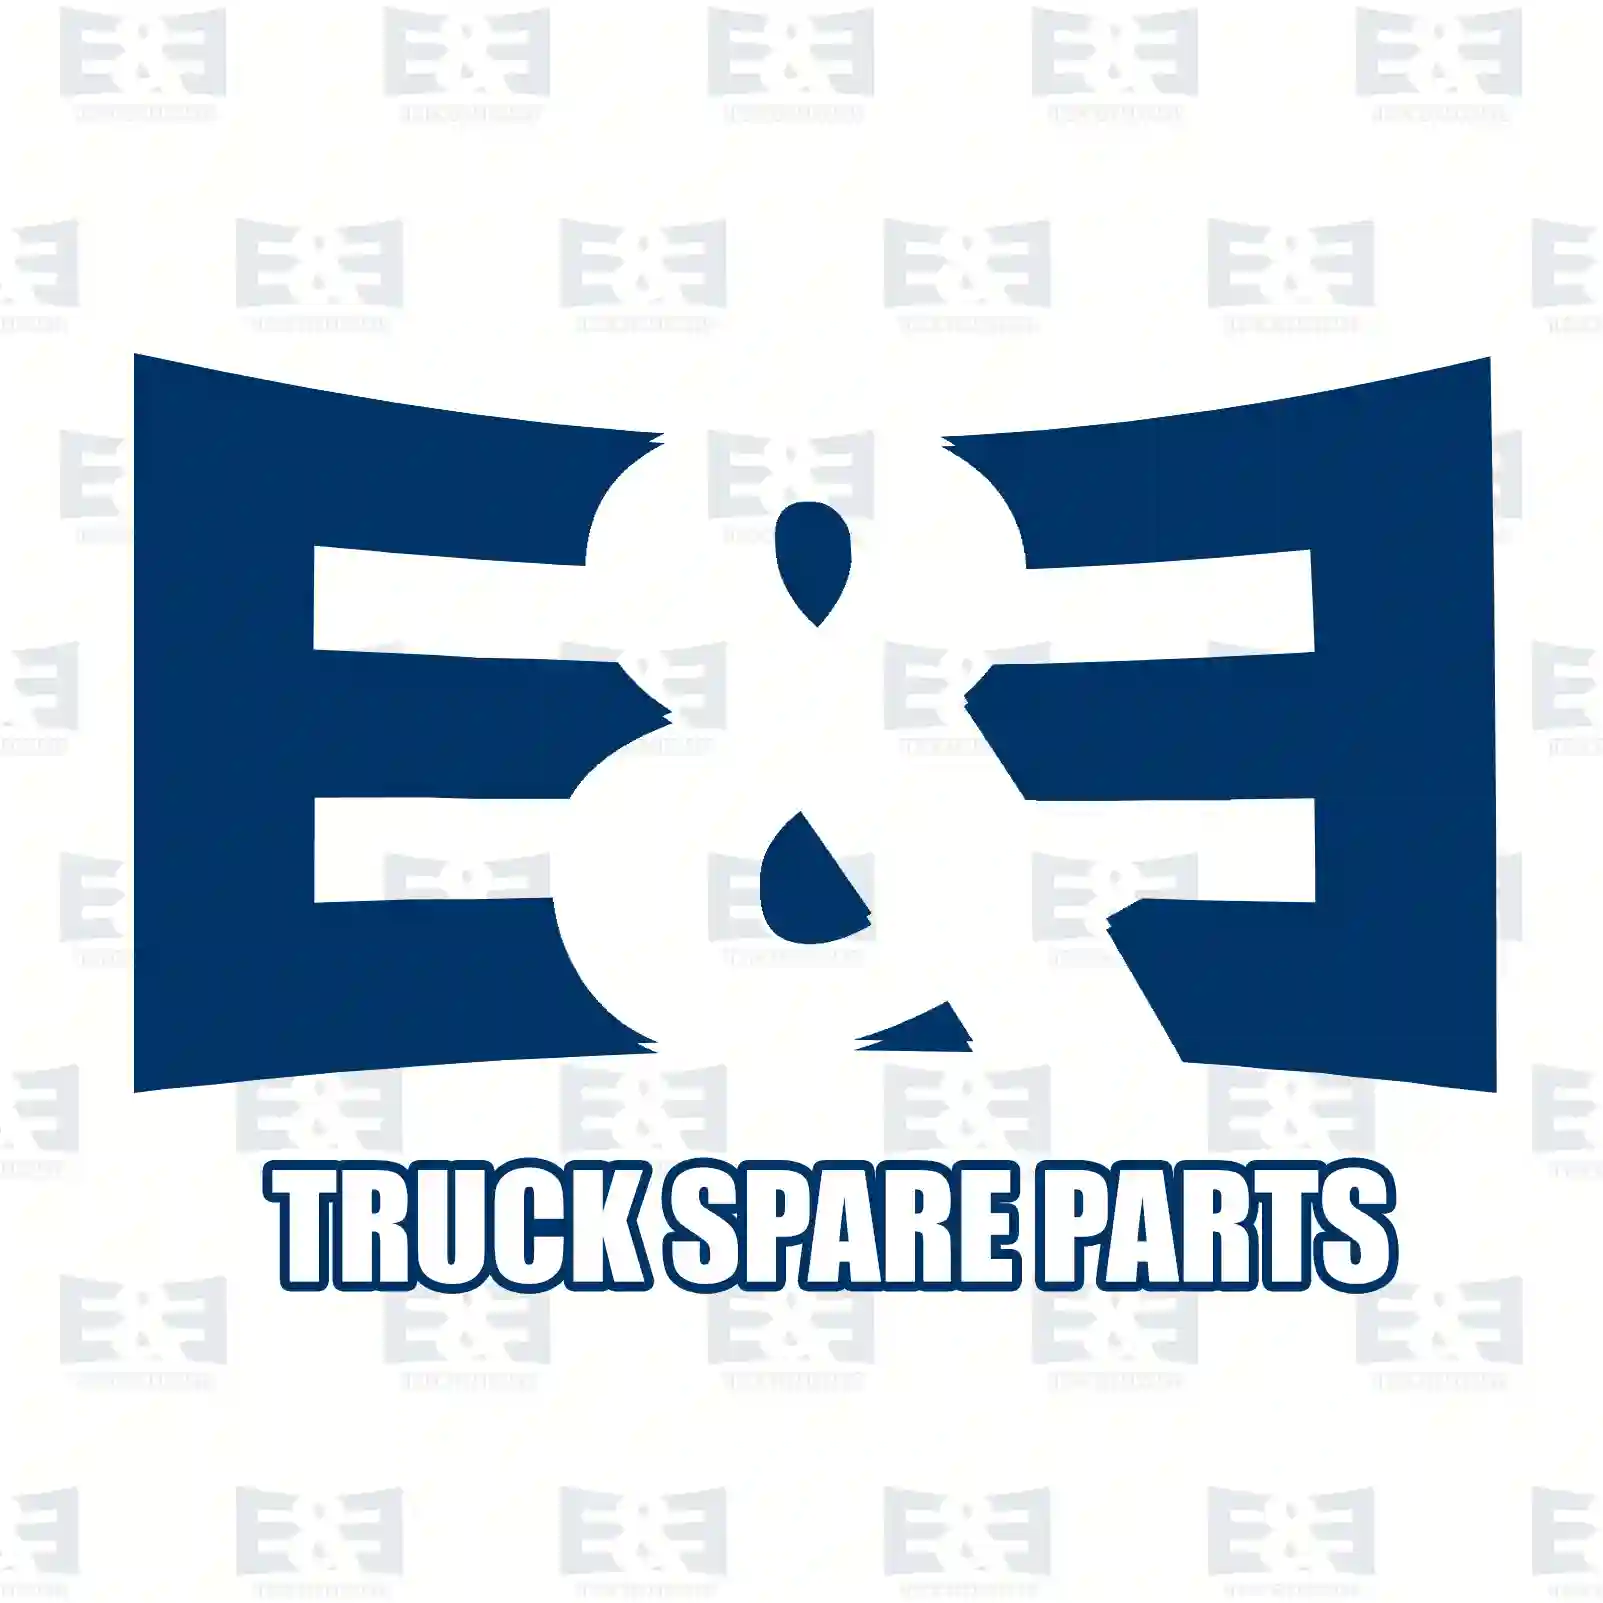 Drive flange, 2E2270164, 20801083, 8172939, ZG30018-0008 ||  2E2270164 E&E Truck Spare Parts | Truck Spare Parts, Auotomotive Spare Parts Drive flange, 2E2270164, 20801083, 8172939, ZG30018-0008 ||  2E2270164 E&E Truck Spare Parts | Truck Spare Parts, Auotomotive Spare Parts